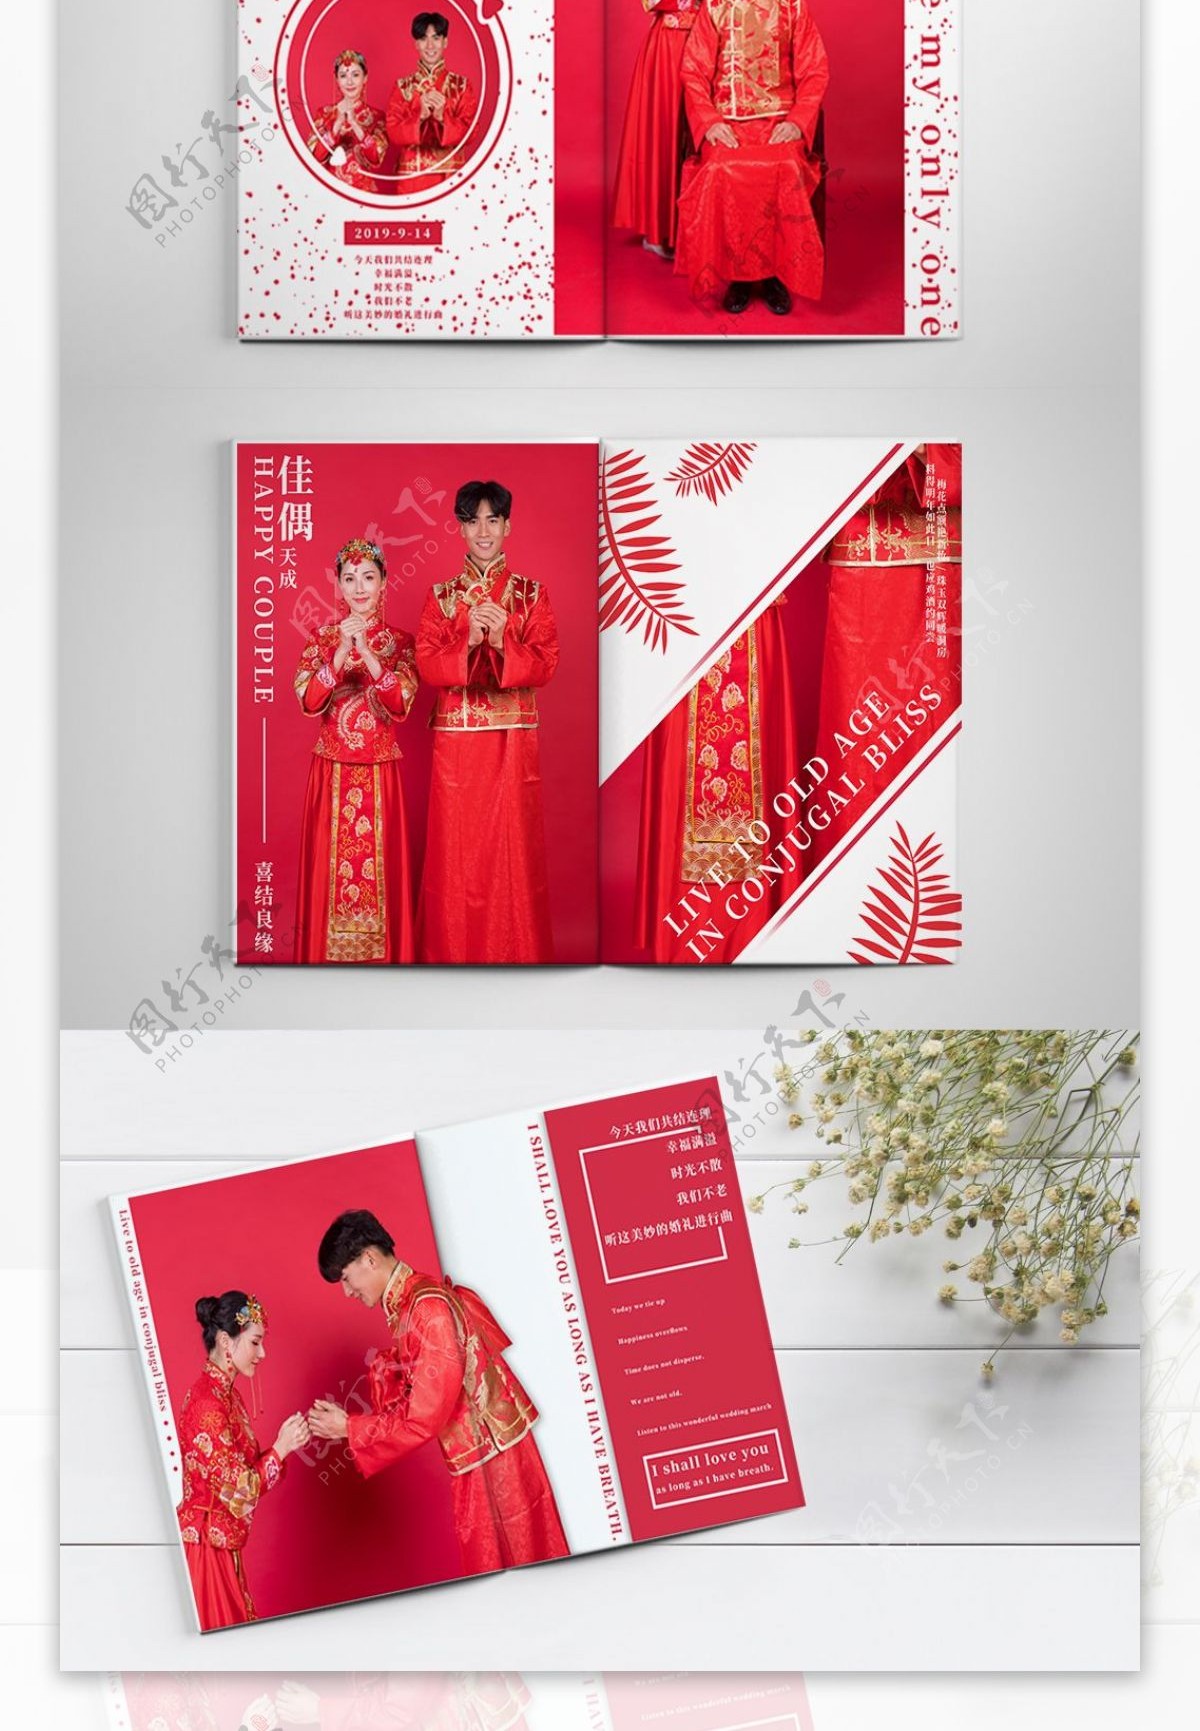 原创小清新中式婚纱结婚照结婚相册纪念摄影